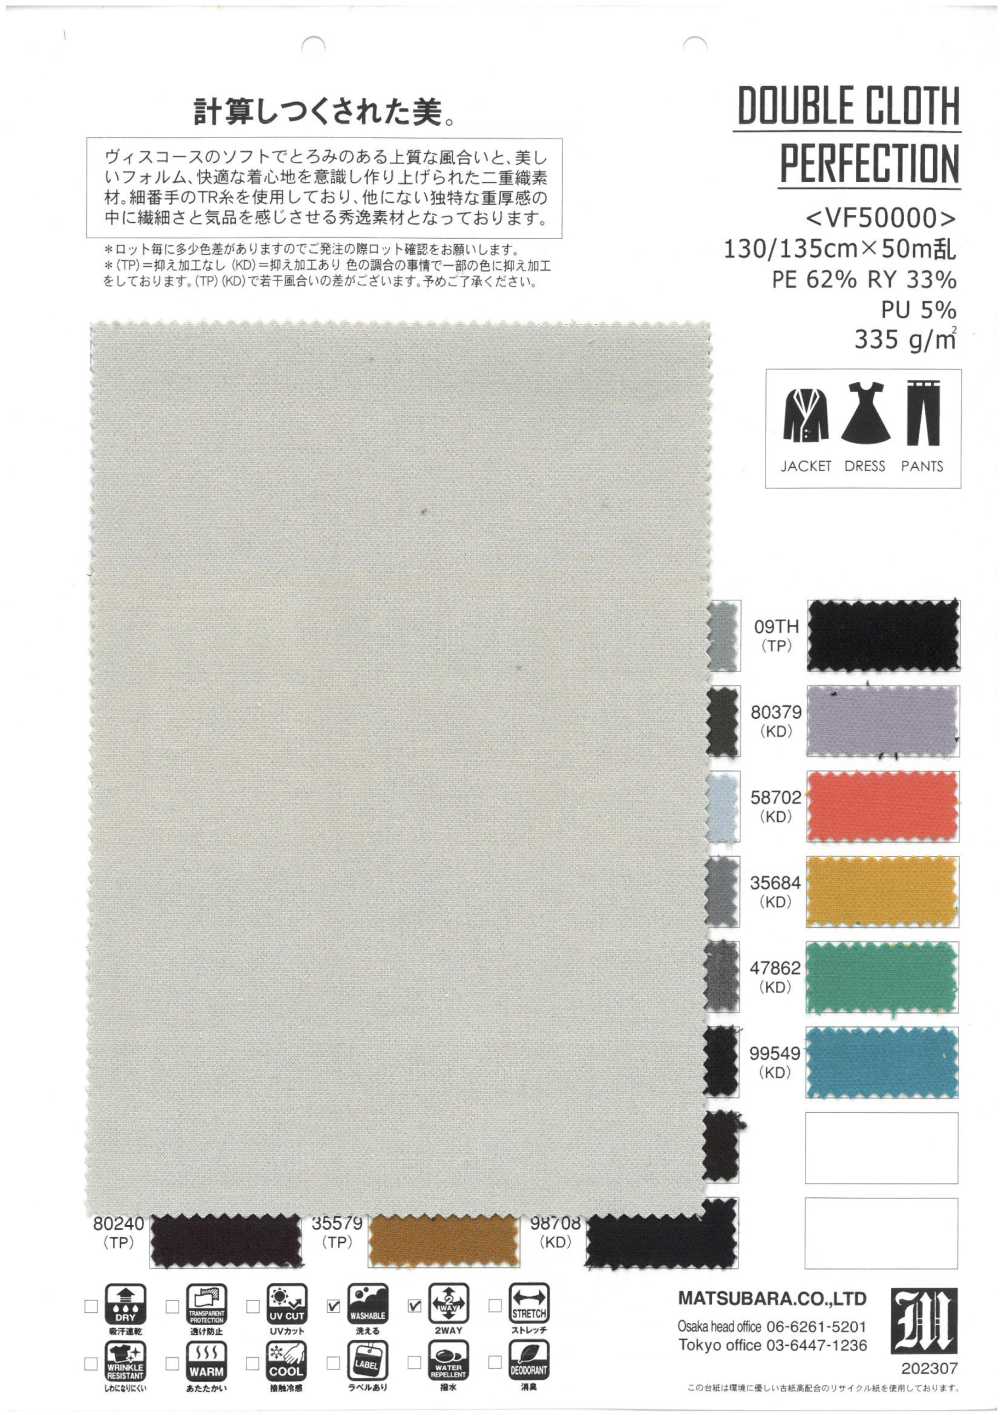 VF50000 PERFEIÇÃO DE PANO DUPLO[Têxtil / Tecido] Matsubara